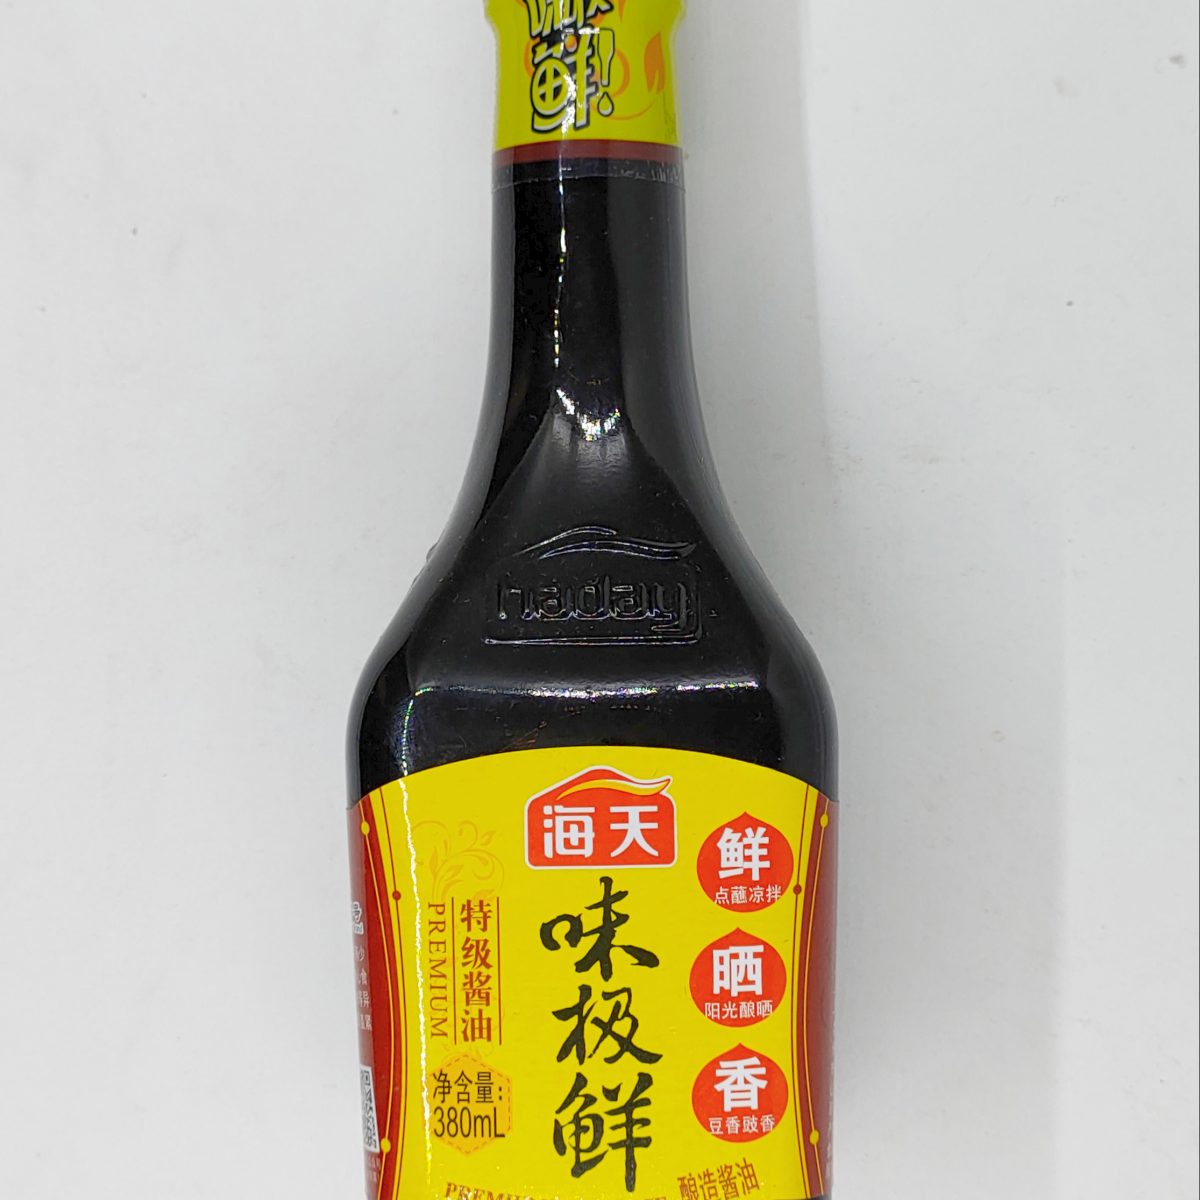 海天 蒸鱼豉油 | HT Soy Sauce For Steamed Fish 450ml - HappyGo Asian Market